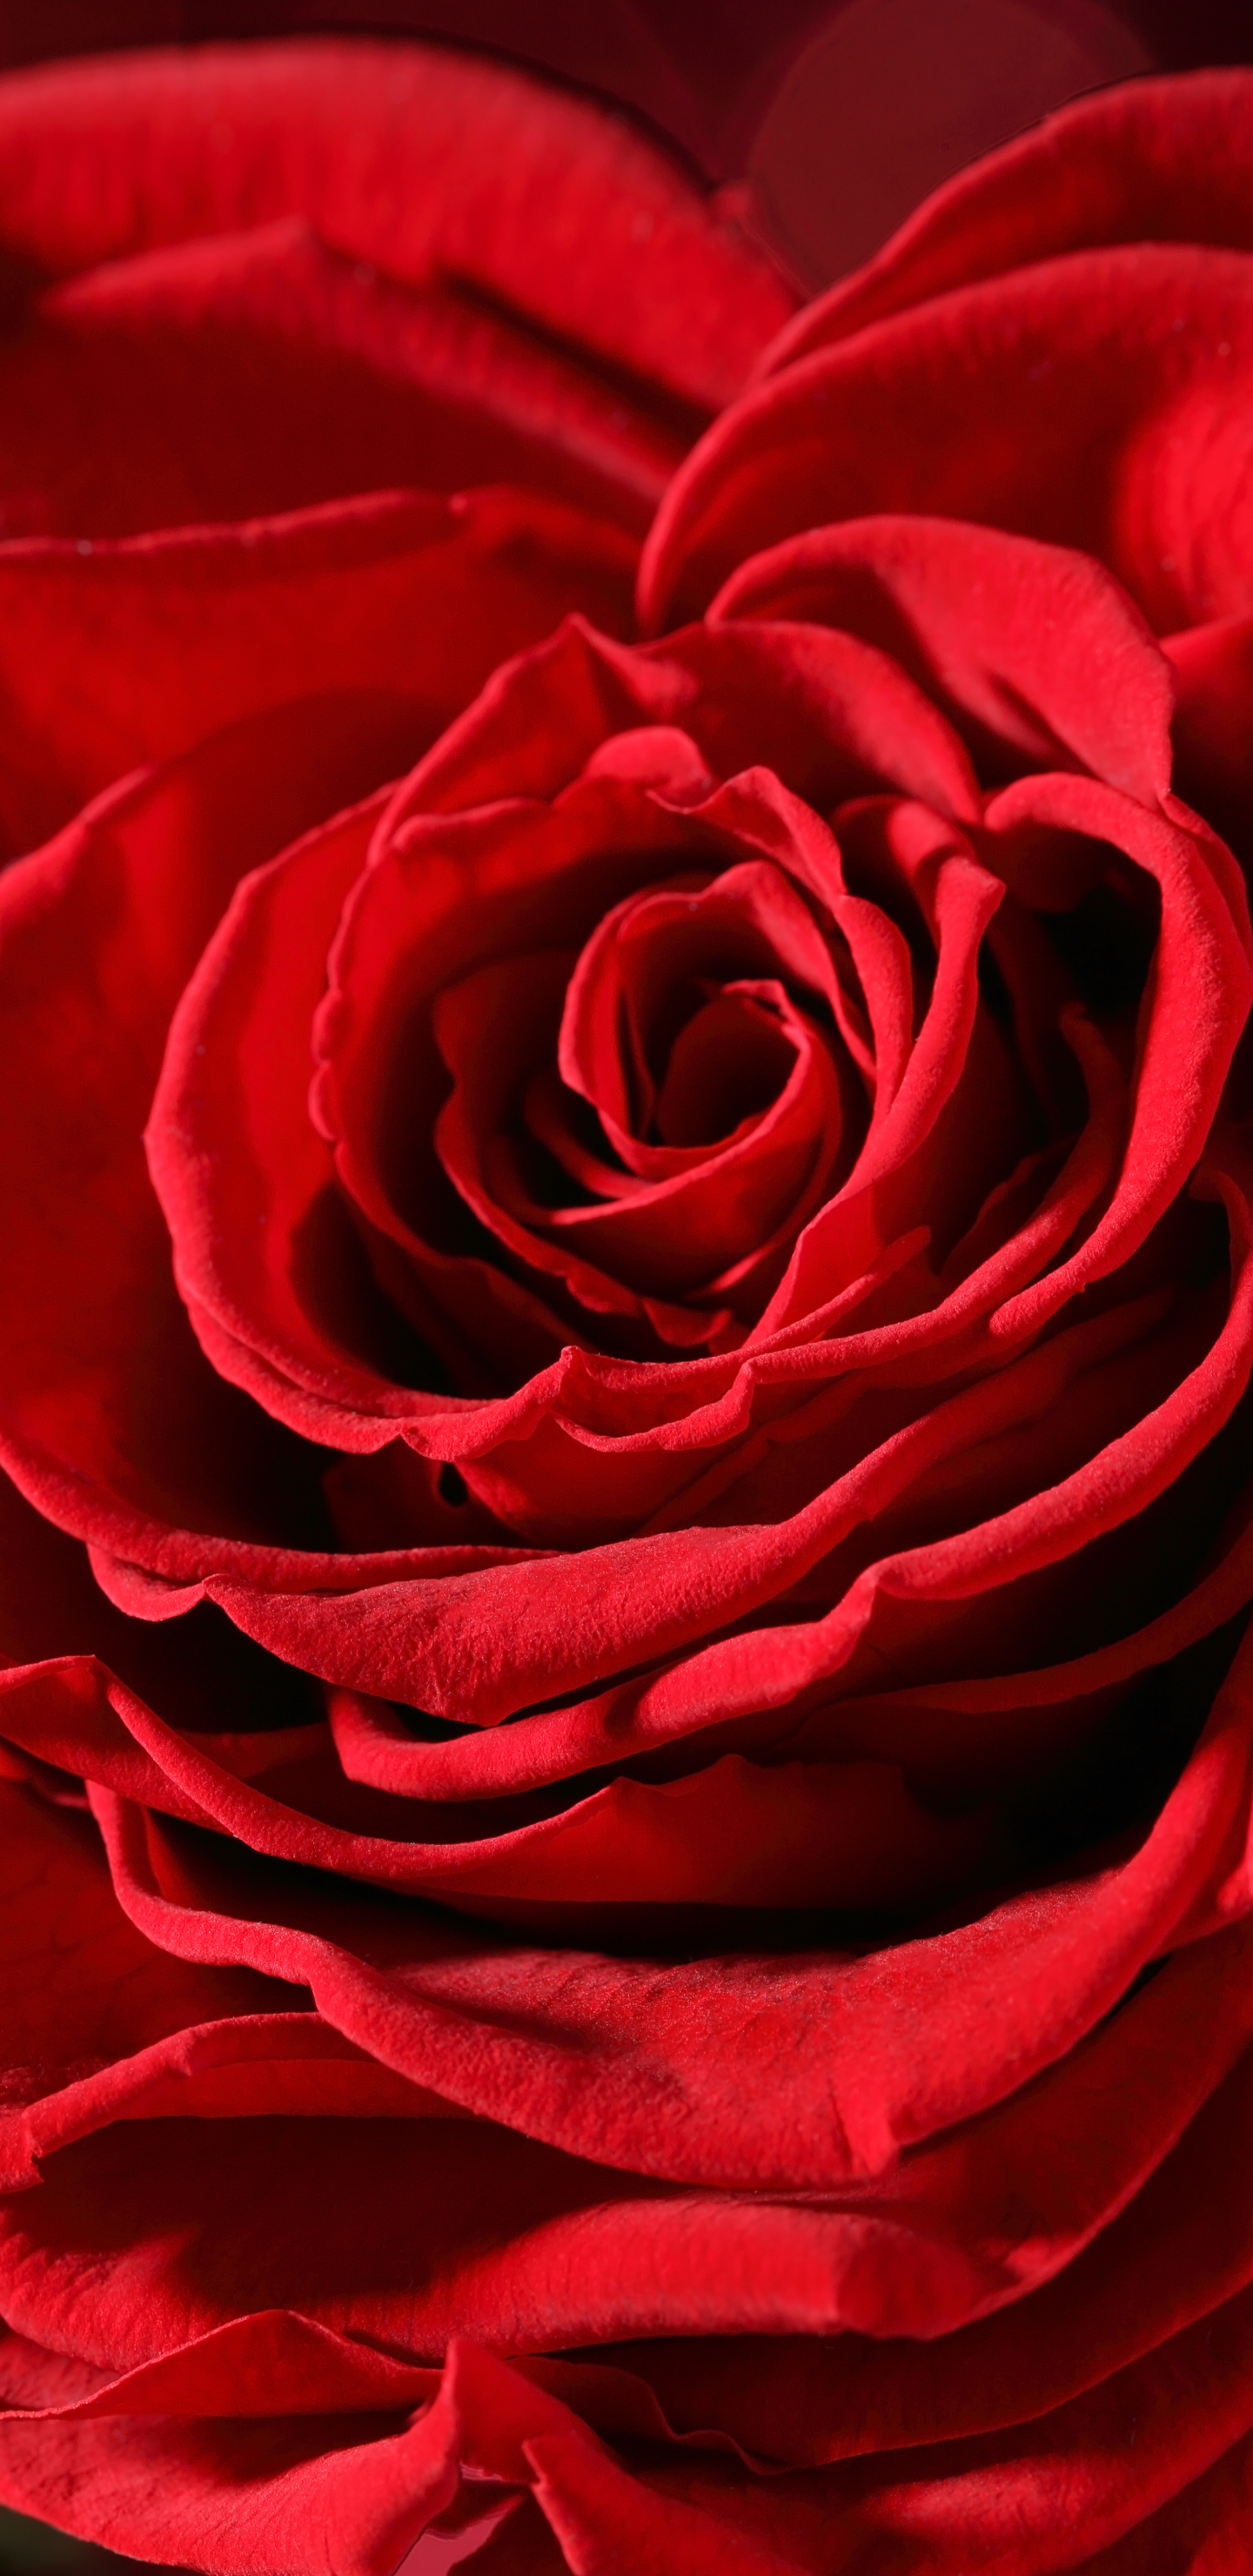 Скачать обои бесплатно Цветок, Макро, Роза, Бутон, Боке, Красная Роза, Красный Цветок, Земля/природа, Макрос, Флауэрсы картинка на рабочий стол ПК